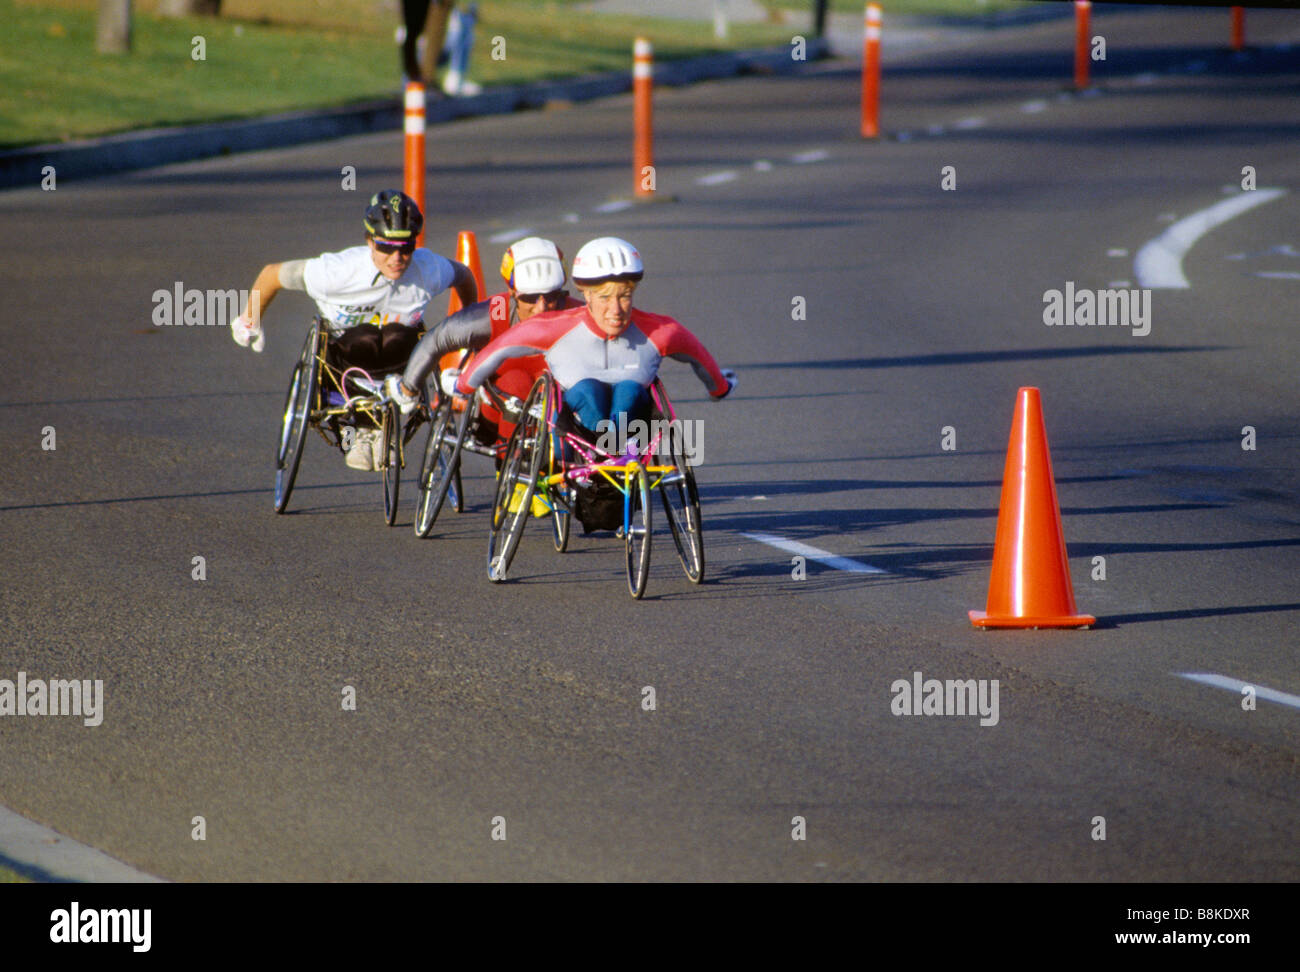 Sedia a rotelle racers round curva durante la gara Foto Stock